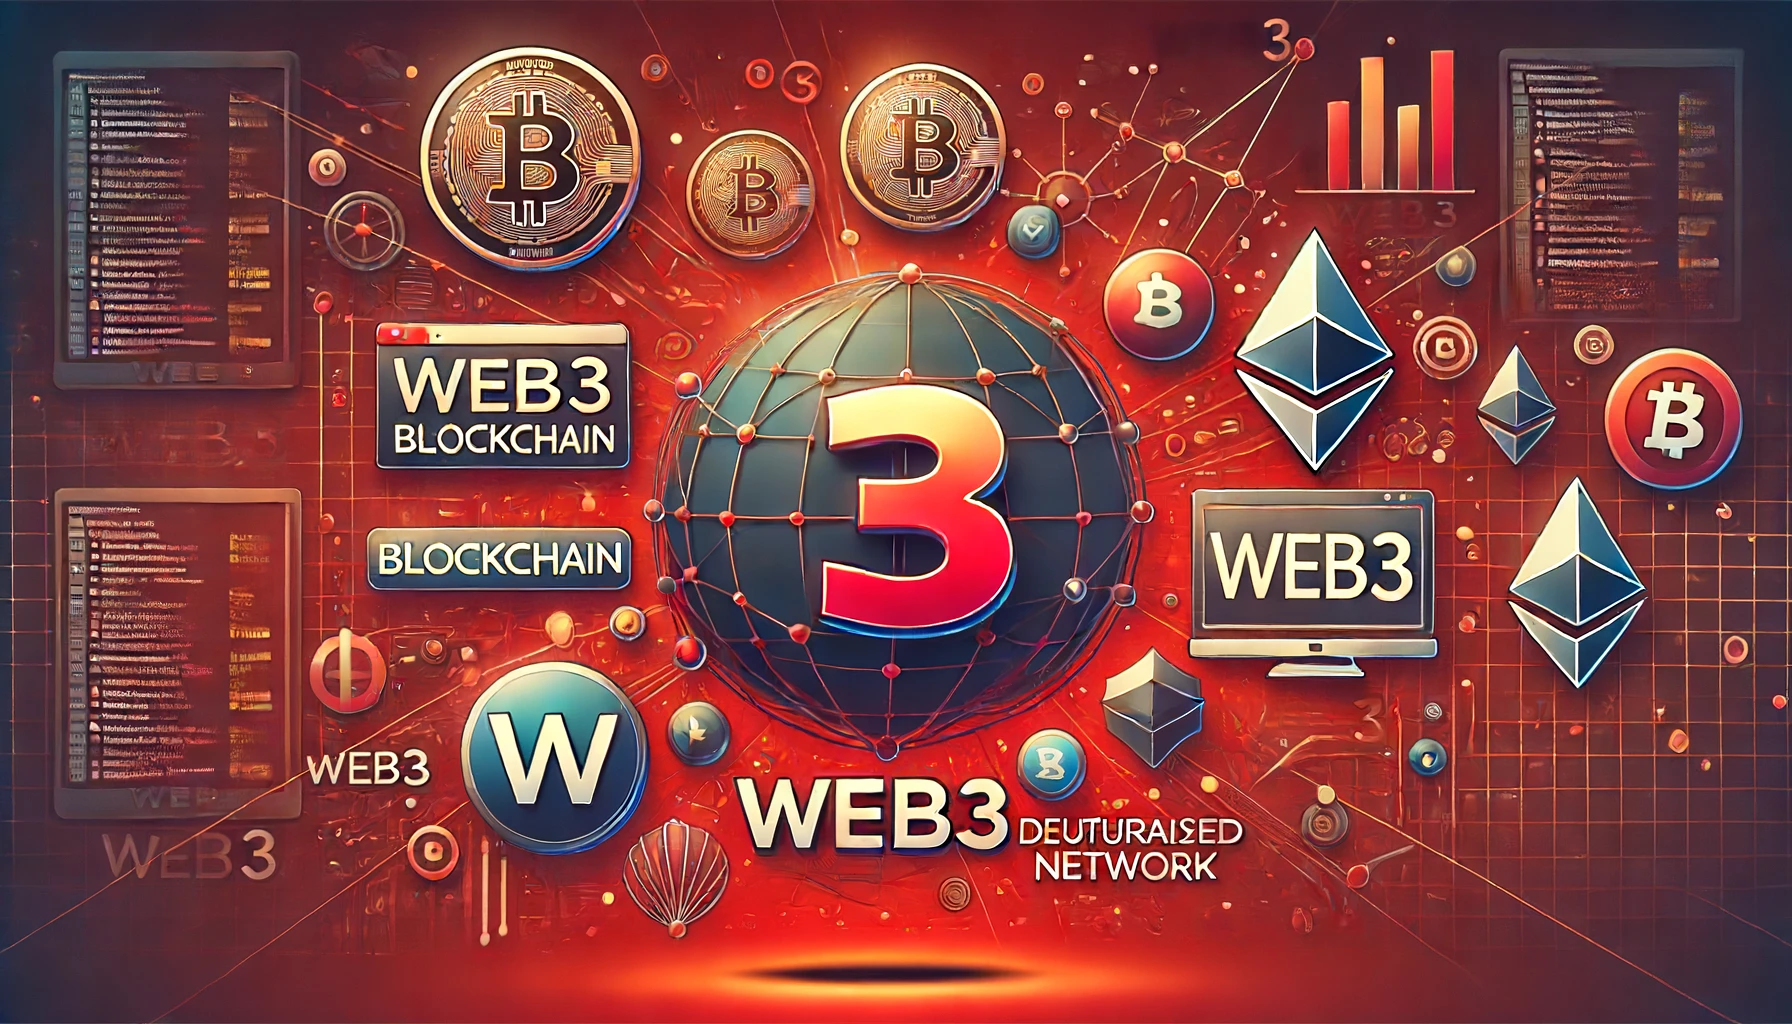 ウェブ3に関するブログ記事のアイキャッチ画像。ブロックチェーン、仮想通貨のアイコン（ビットコインとイーサリアム）、分散型ネットワークのシンボルが赤い背景に配置されています。